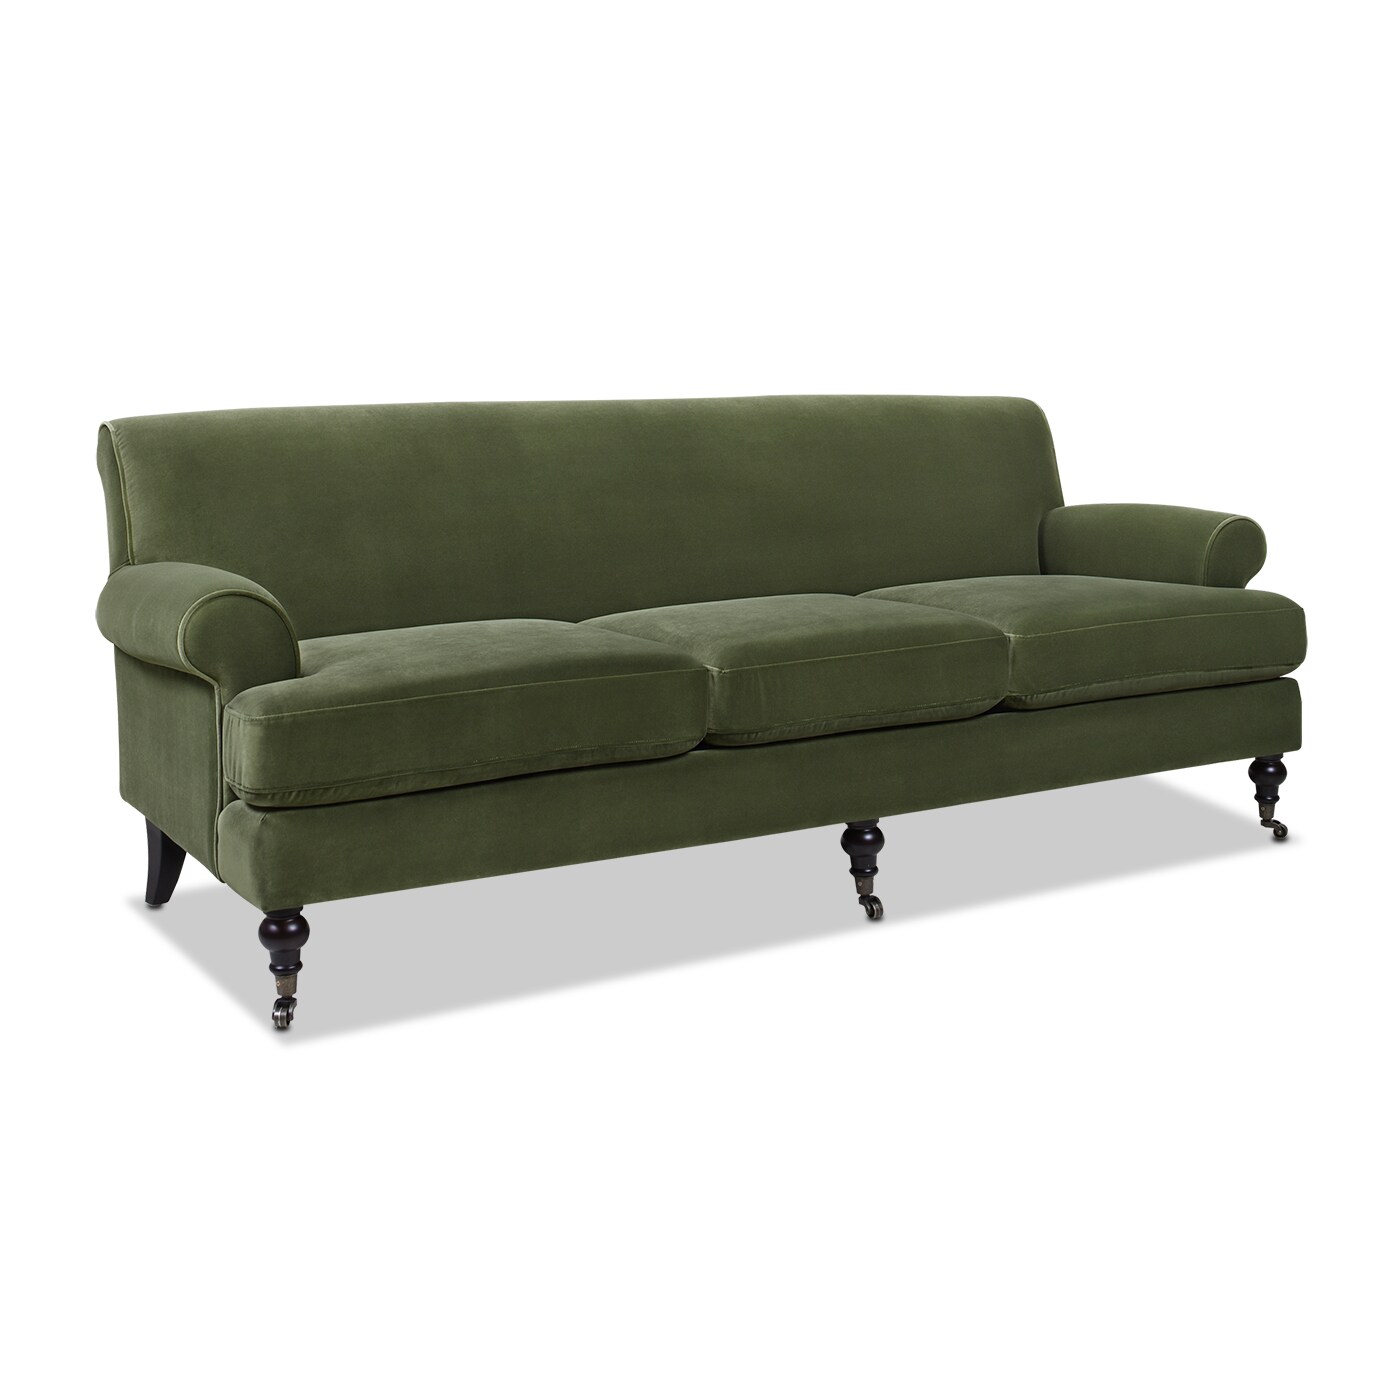 Buy Atlanta Velvet 2 Seater Sofa In Olive Green Colour at 5% OFF